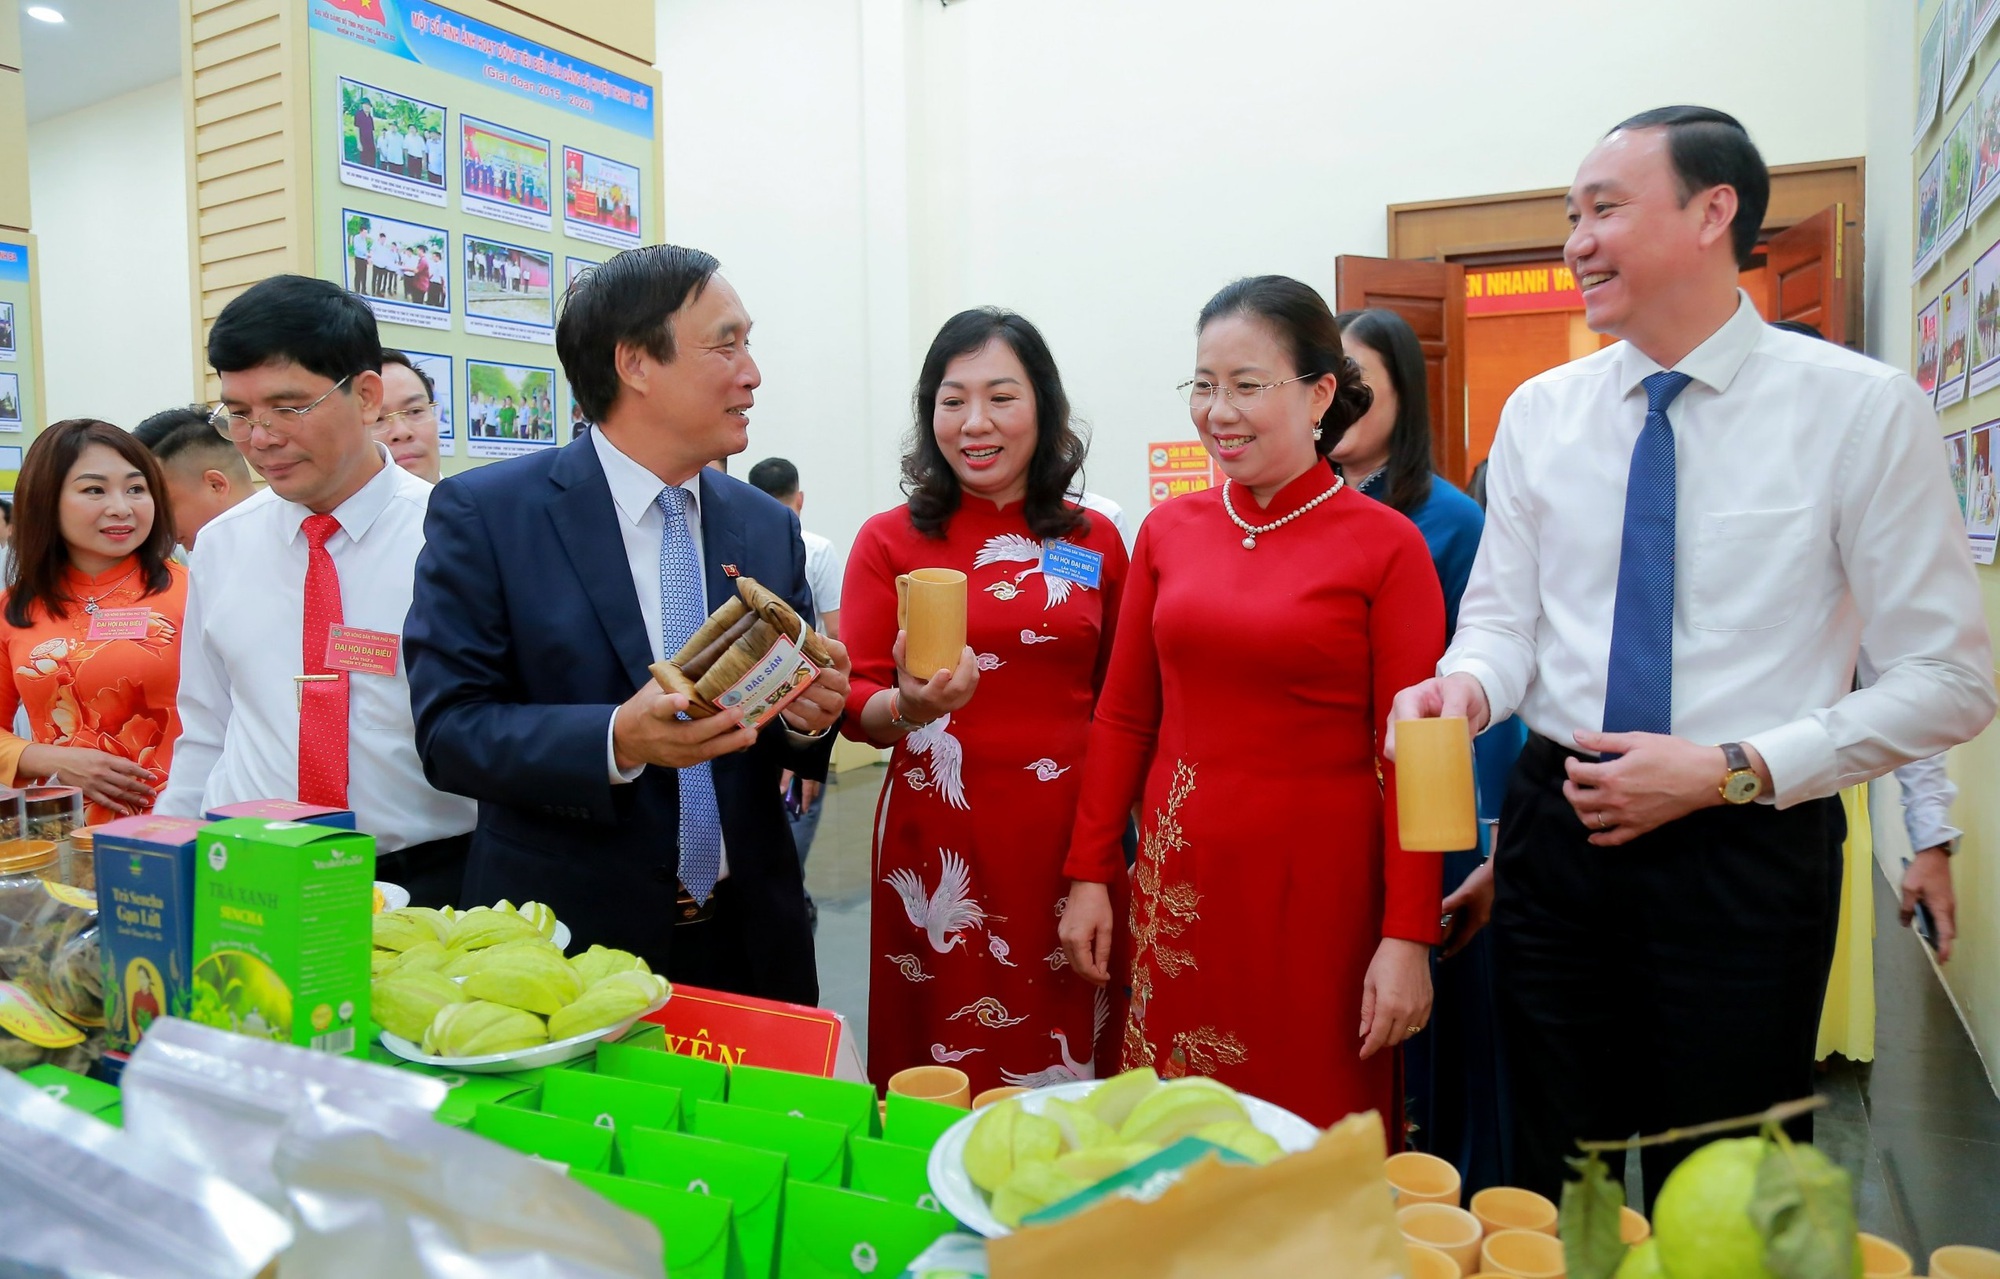 Phó Chủ tịch Hội NDVN Bùi Thị Thơm: Phú Thọ đi đầu kết nạp hội viên mới là nhà khoa học, sinh viên - Ảnh 3.